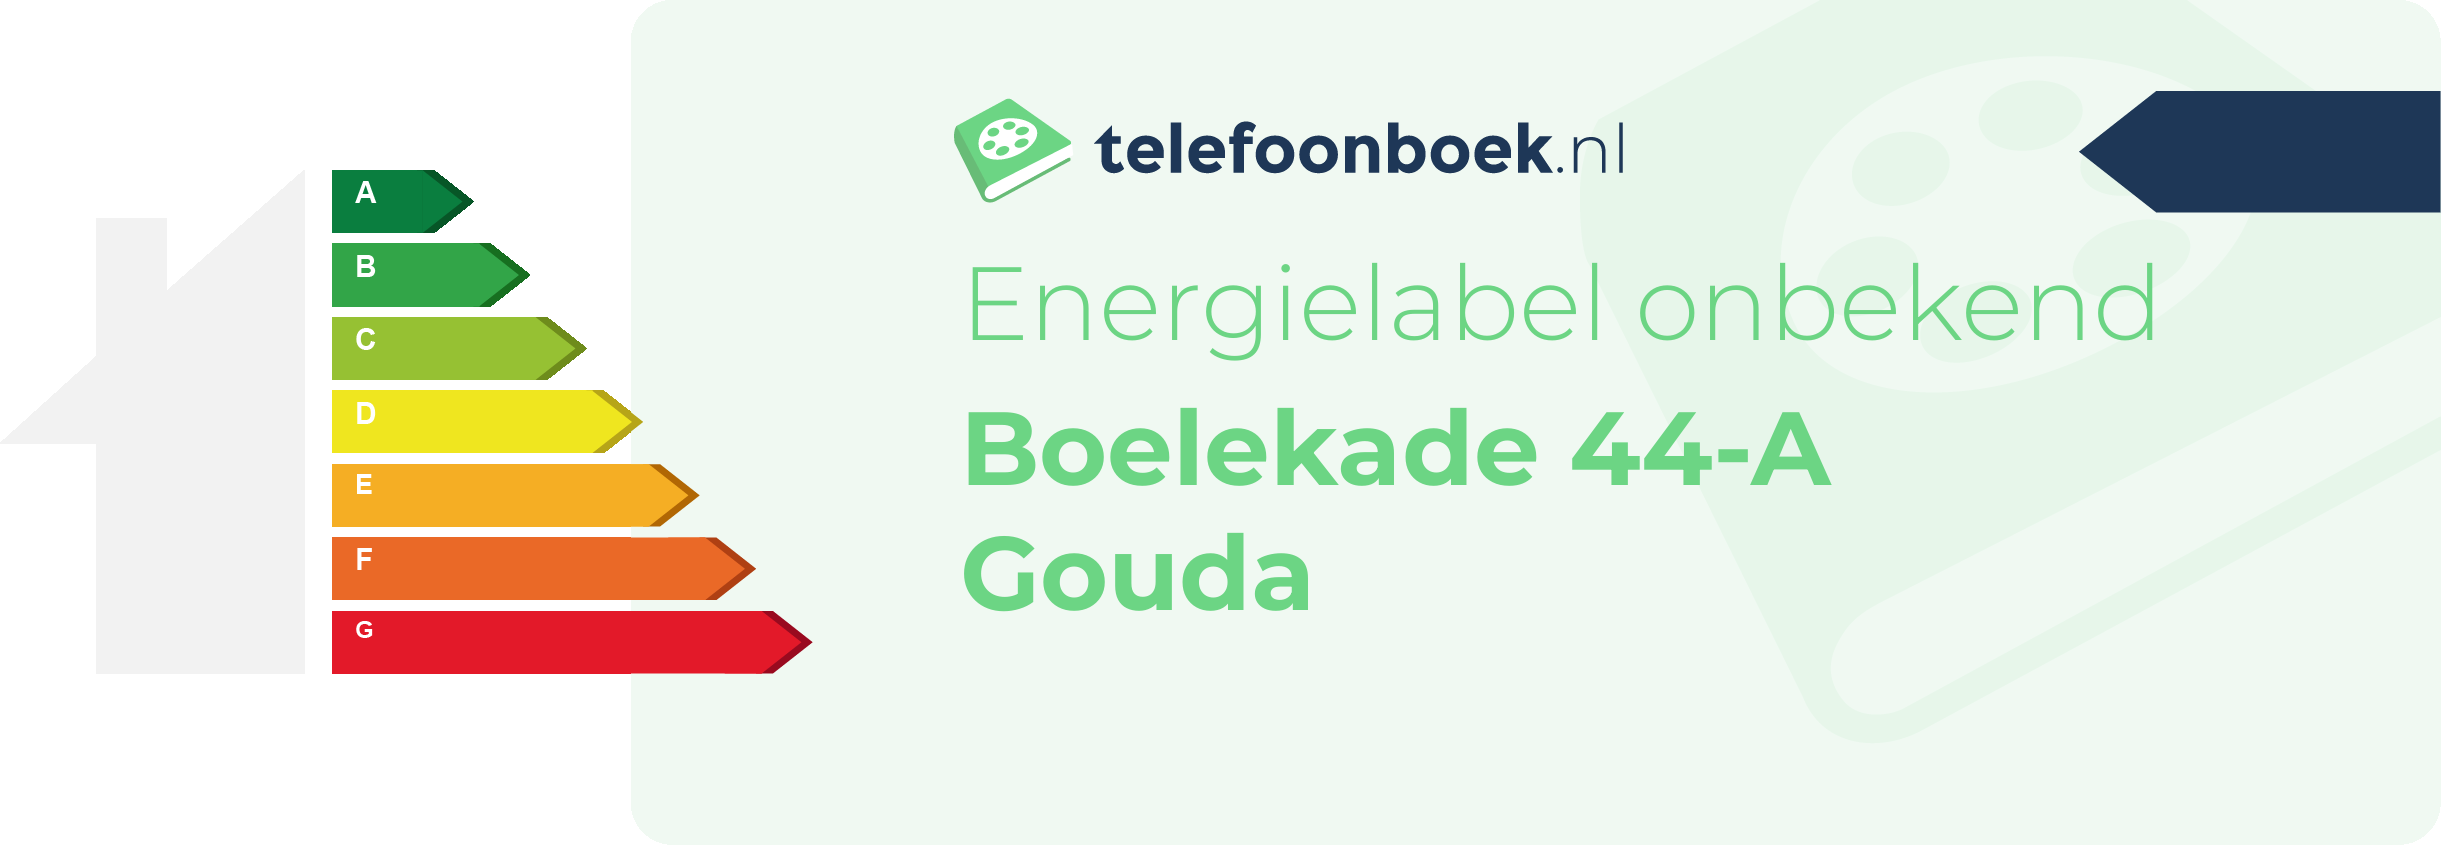 Energielabel Boelekade 44-A Gouda